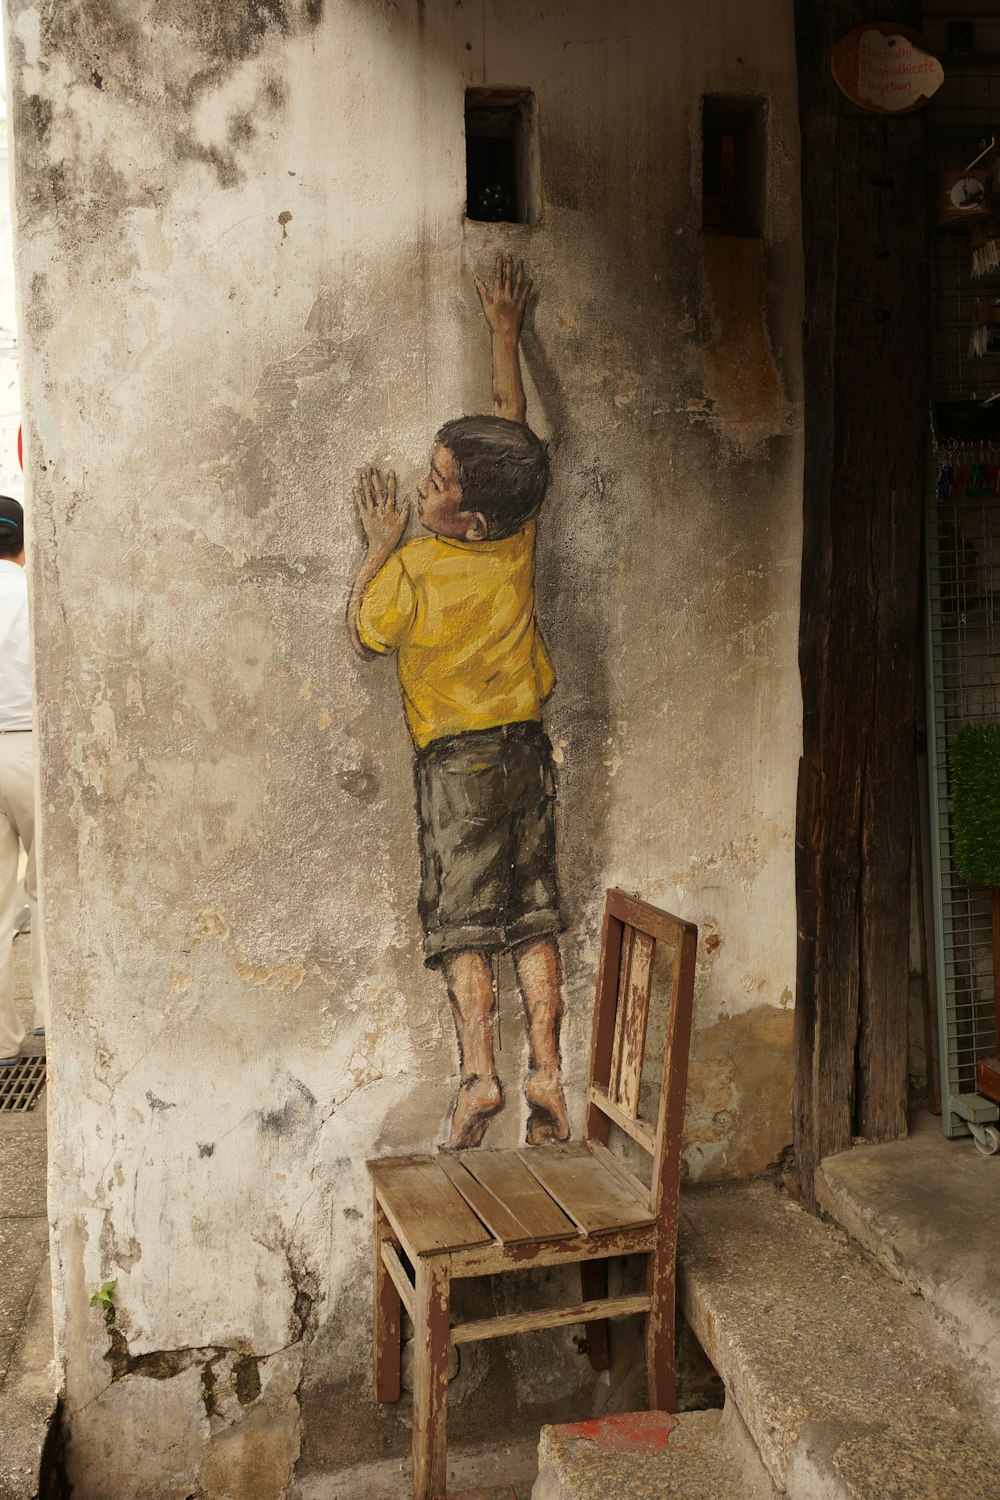 menino em pé na cadeira de madeira alcançando buraco na pintura da parede de concreto